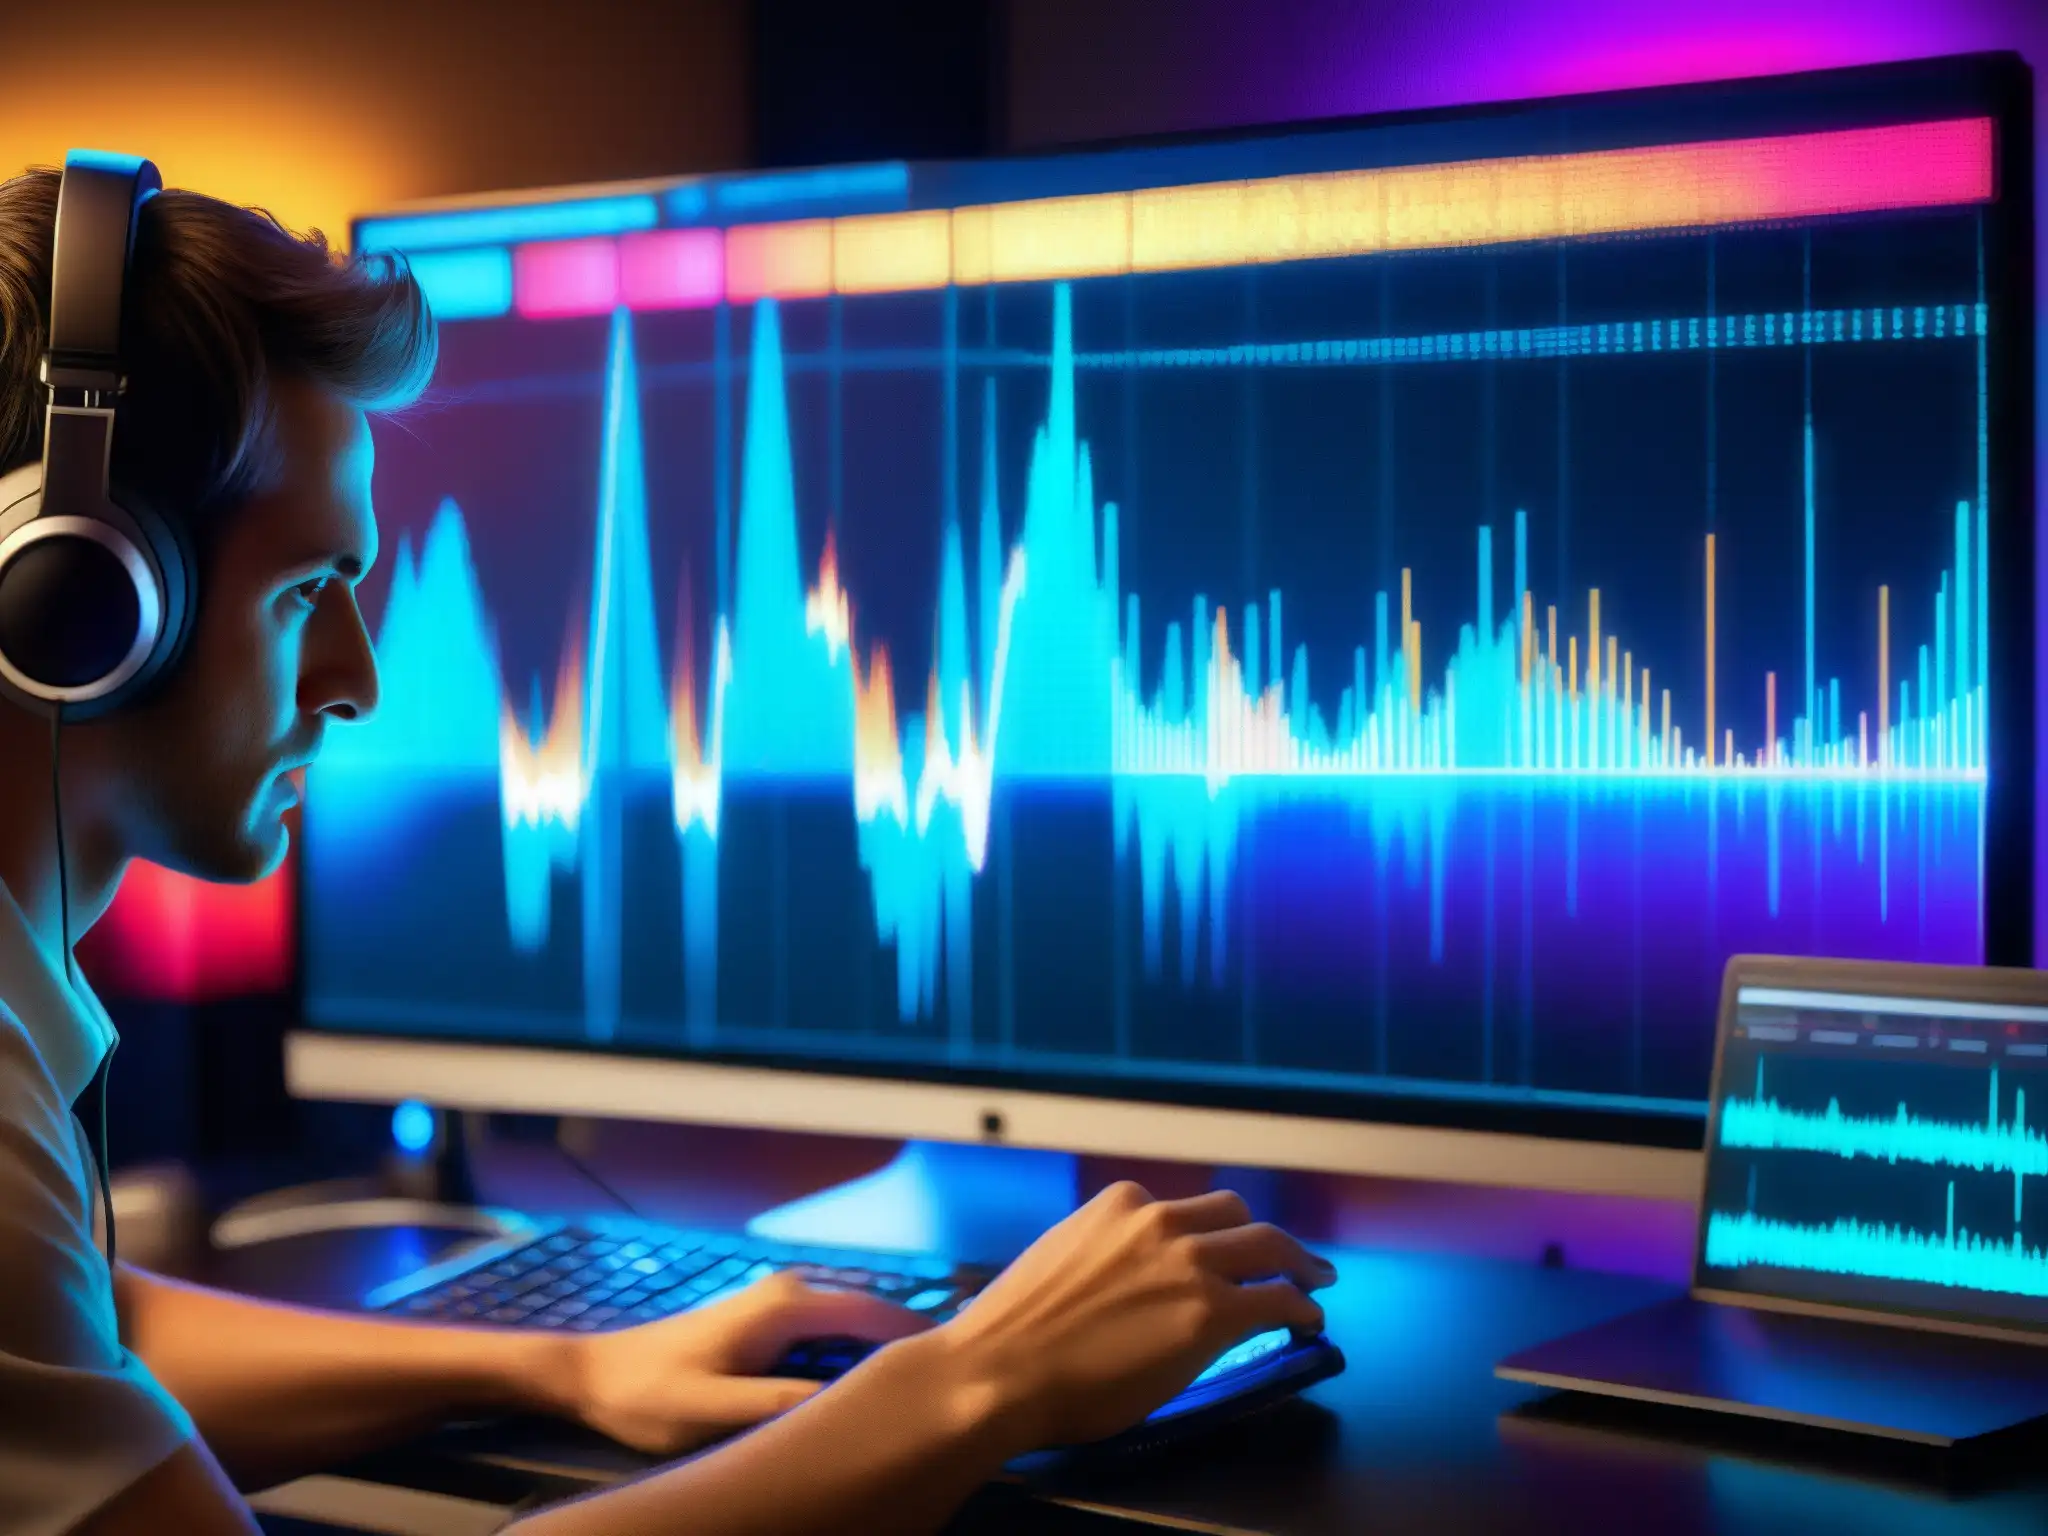 Un músico analiza mensajes subliminales en una onda de música digital, en un estudio de grabación